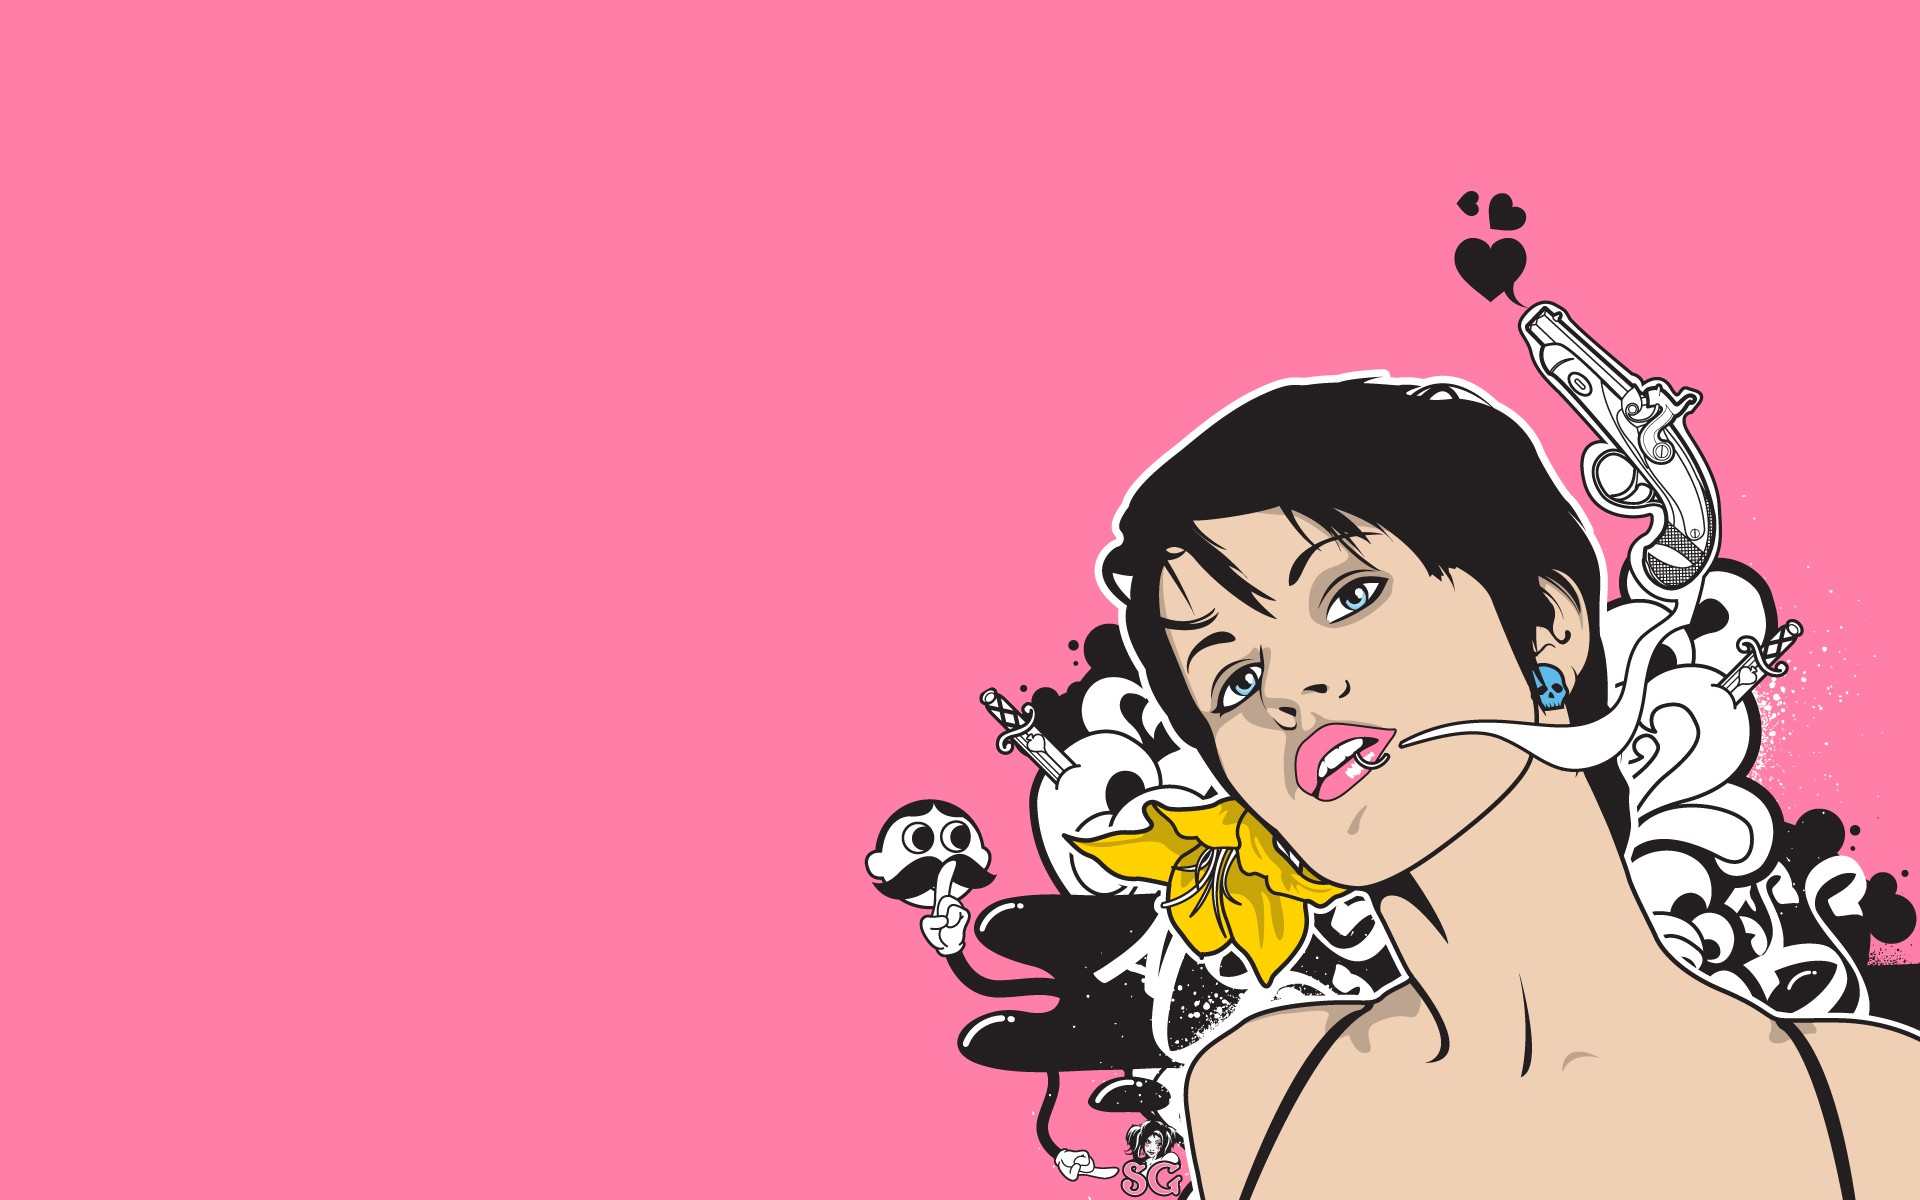 General 1920x1200 artwork simple background women gun pink background pink lipstick pierced lip black hair weapon